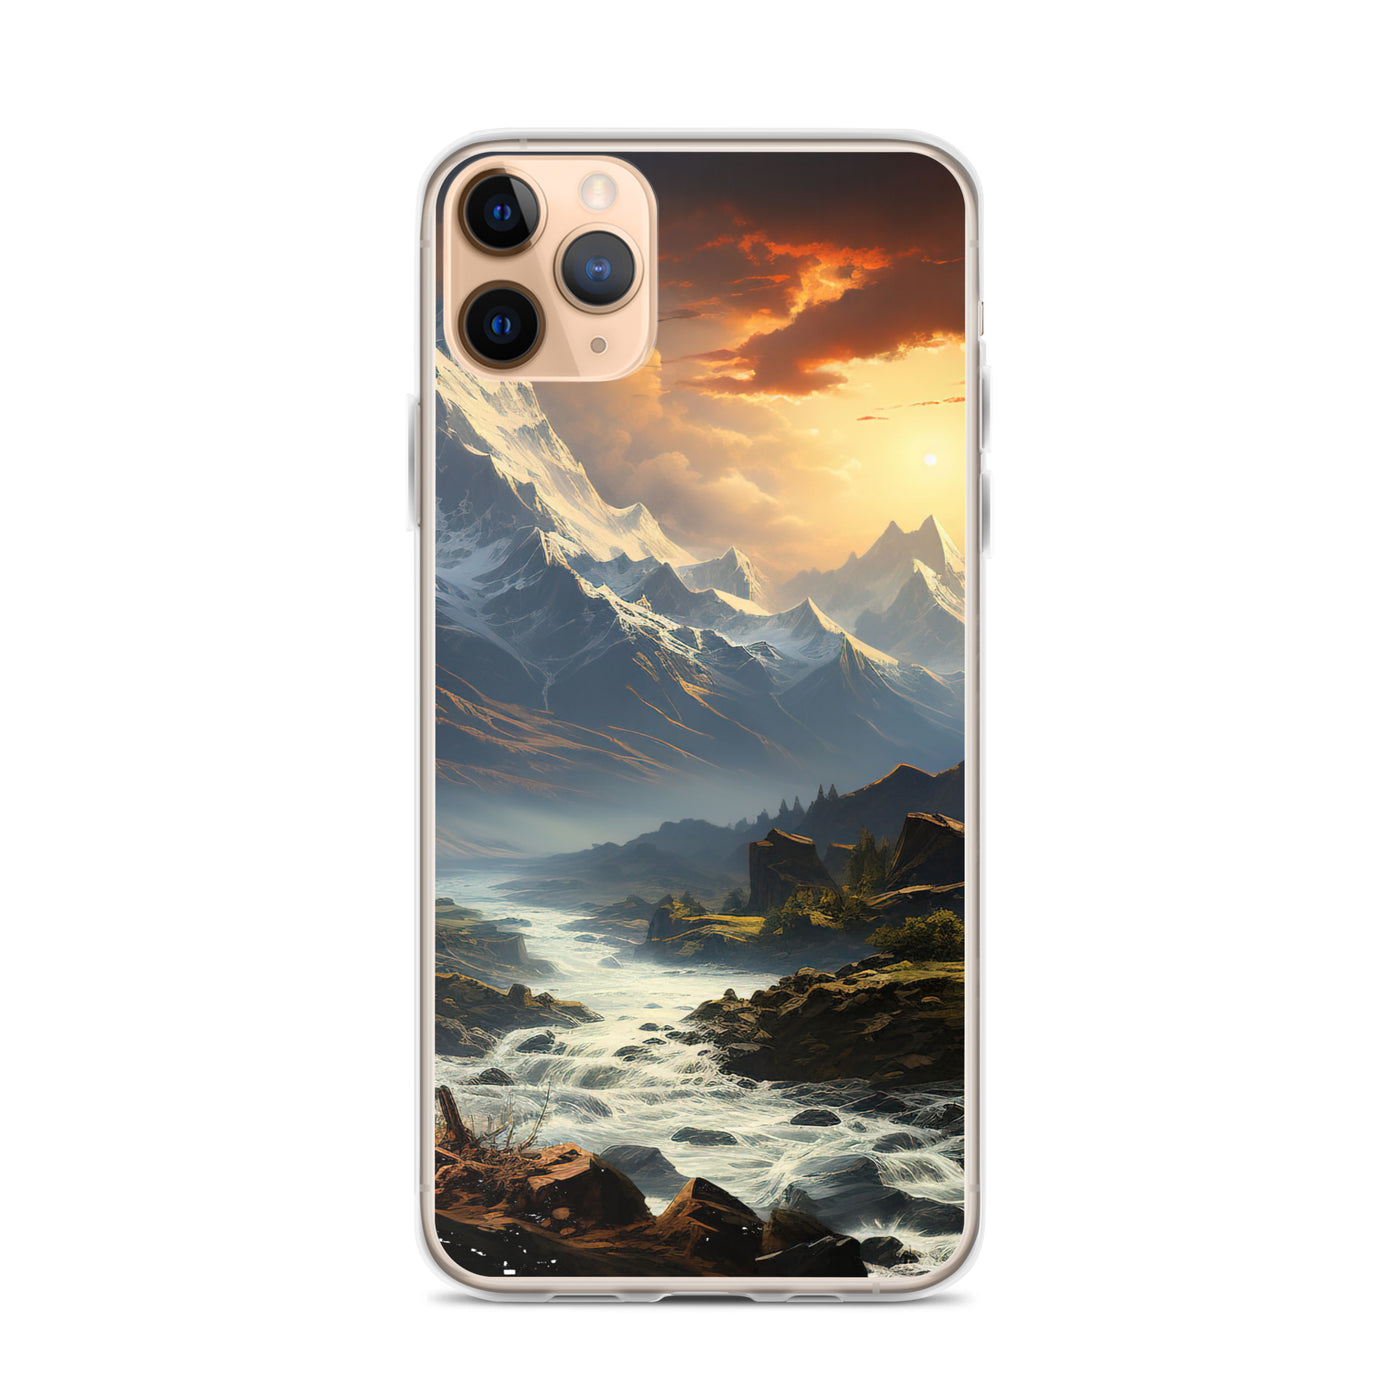 Berge, Sonne, steiniger Bach und Wolken - Epische Stimmung - iPhone Schutzhülle (durchsichtig) berge xxx iPhone 11 Pro Max